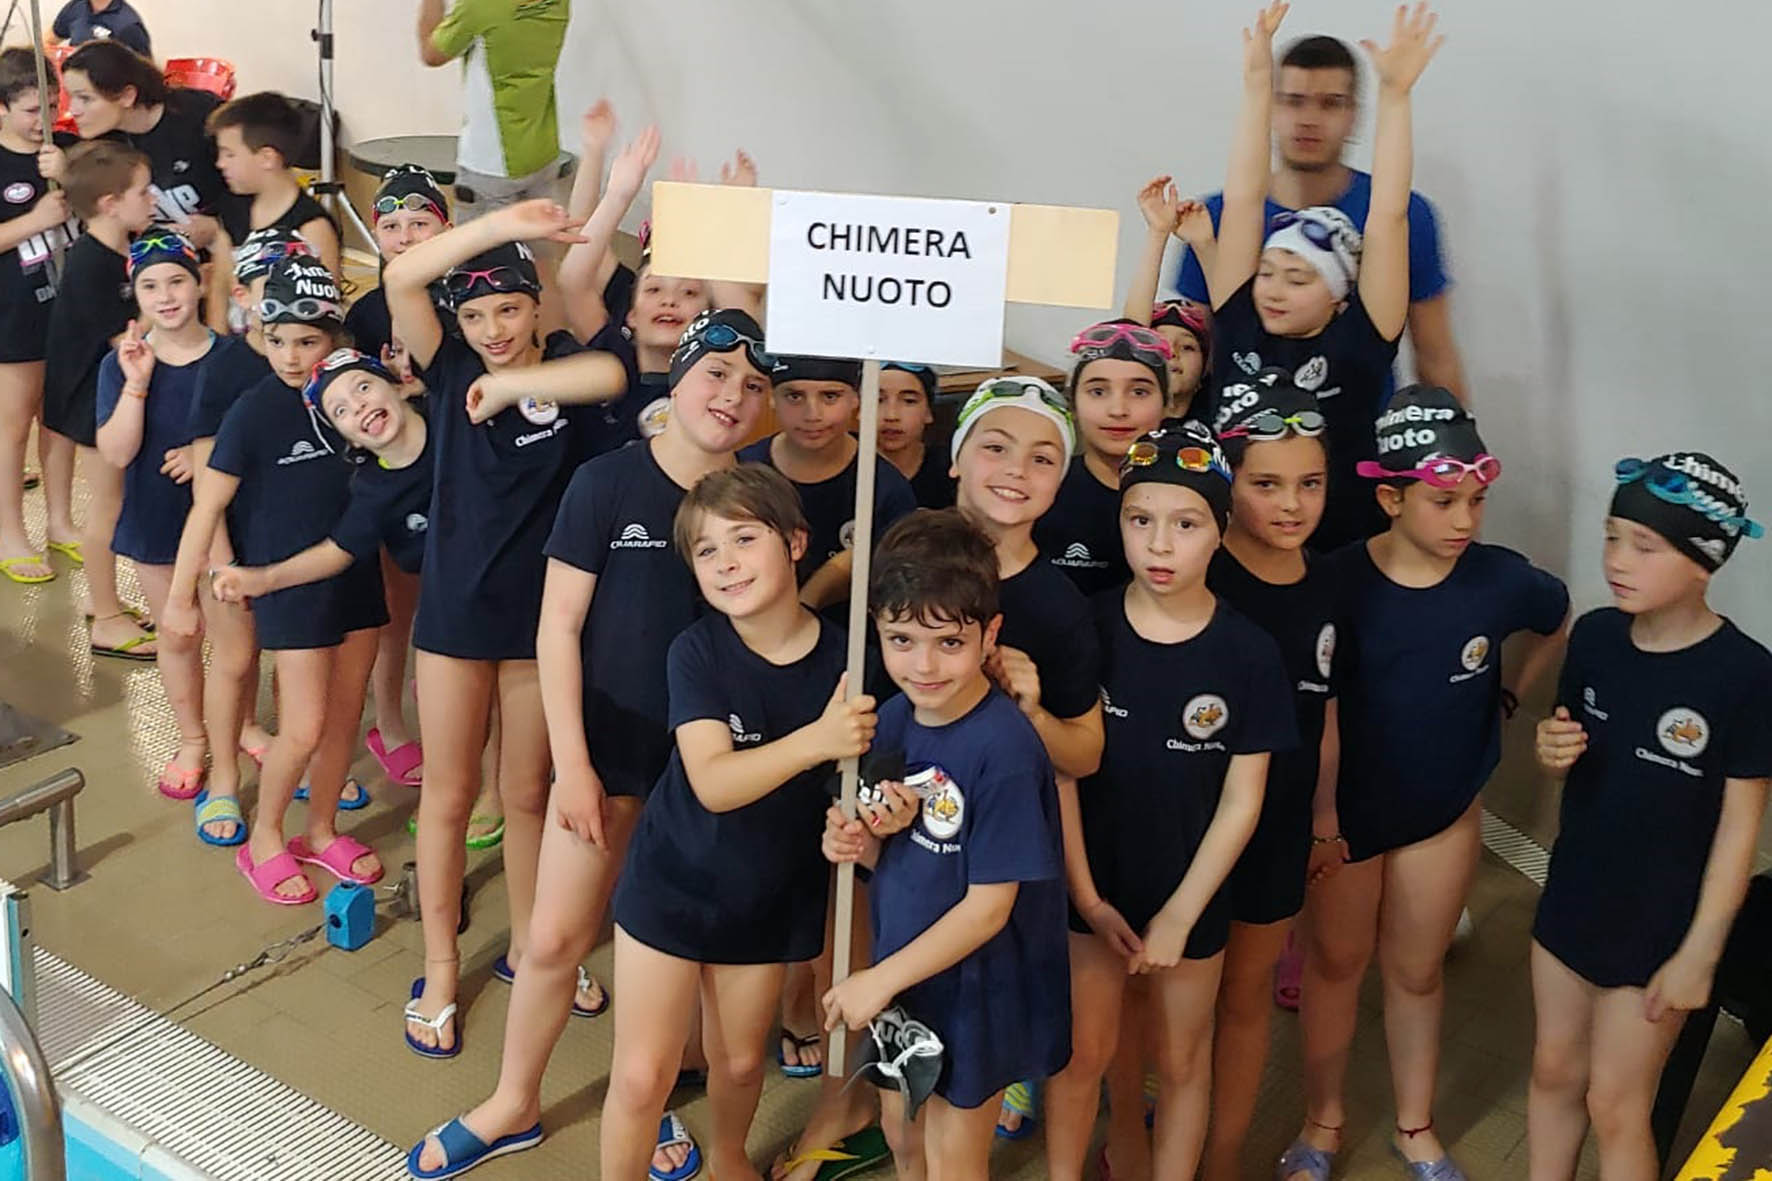 La Chimera Nuoto vince otto titoli regionali nel Propaganda